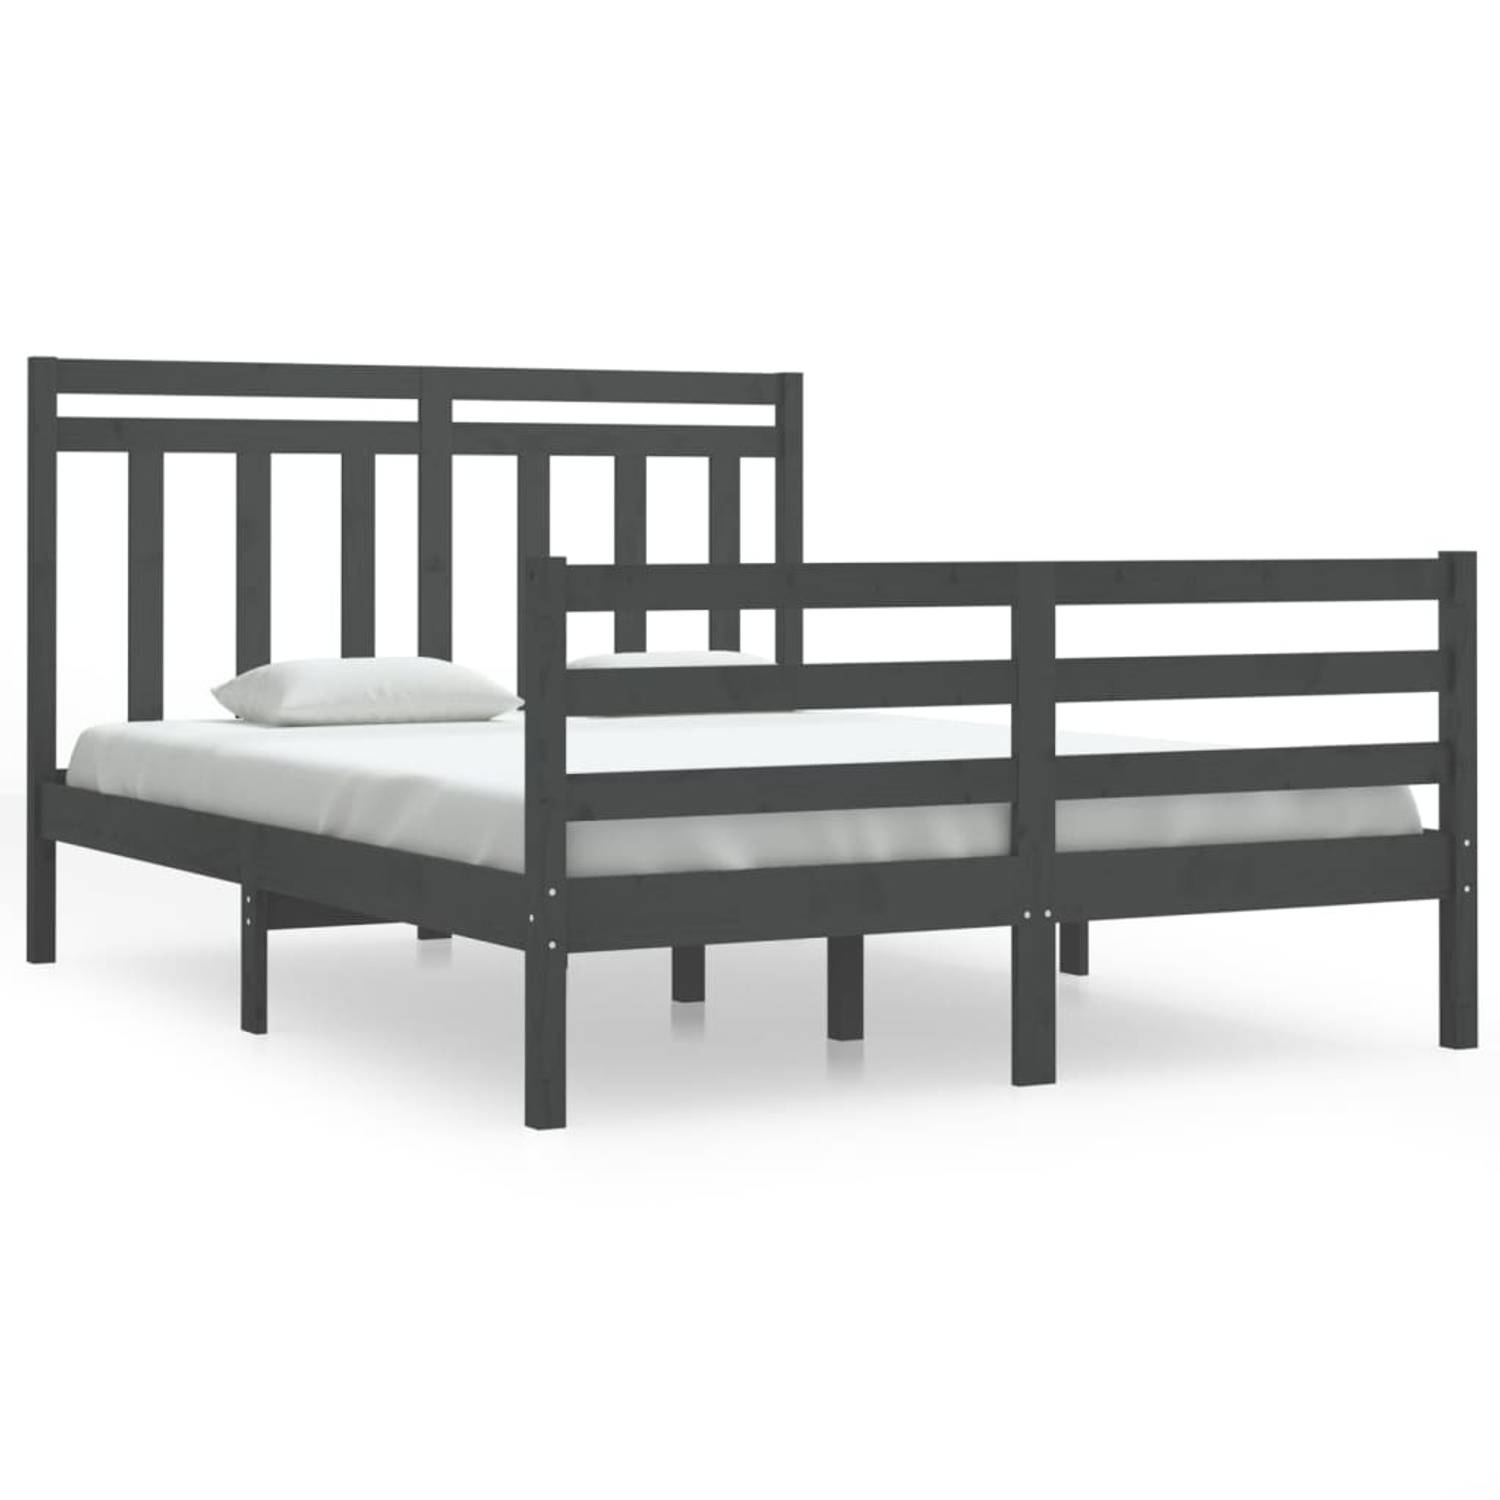 The Living Store Bedframe massief hout grijs 140x190 cm - Bedframe - Bedframes - Tweepersoonsbed - Bed - Bedombouw - Dubbel Bed - Frame - Bed Frame - Ledikant - Houten Bedframe - T